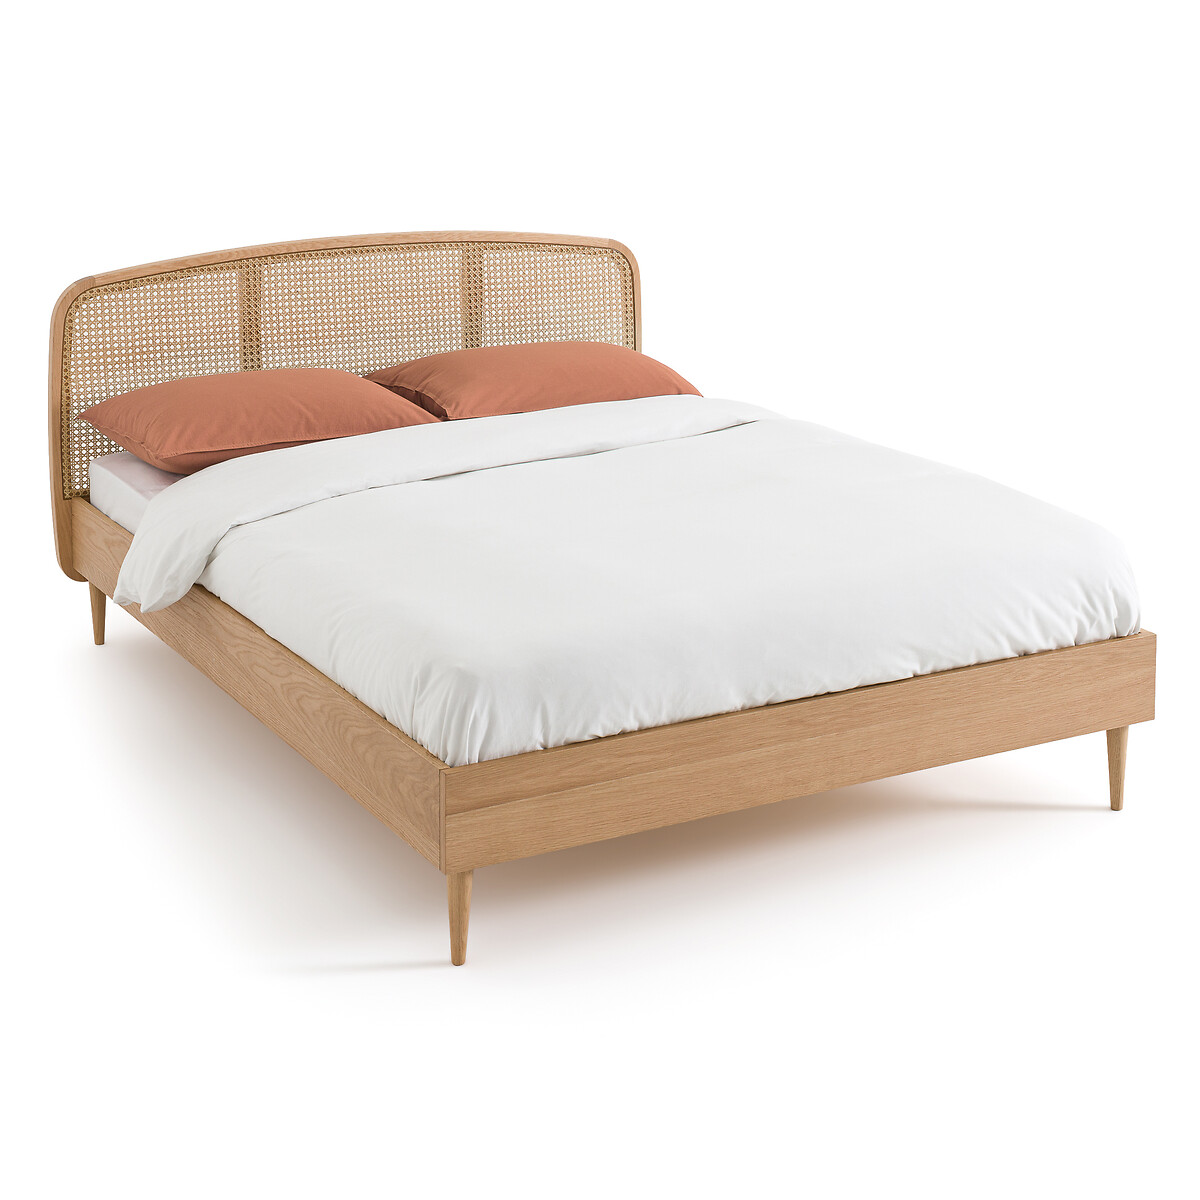 Кровать из дуба и плетеного материала с реечным кроватным основанием Buisseau  140 x 190 см каштановый LaRedoute, размер 140 x 190 см - фото 1